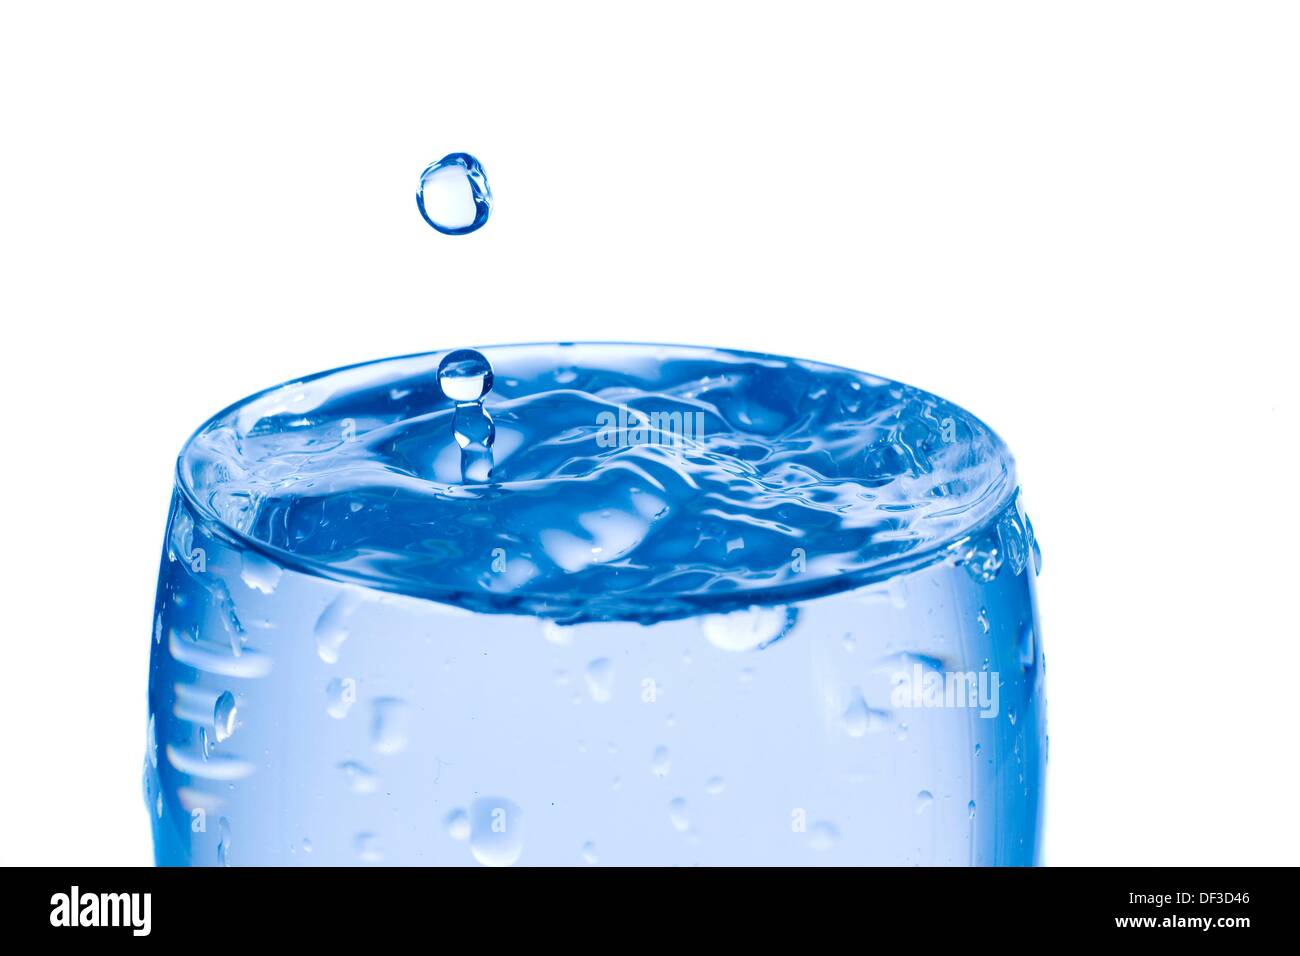 Gotas de agua en un vaso lleno de agua, fondo blanco Fotografía de stock -  Alamy